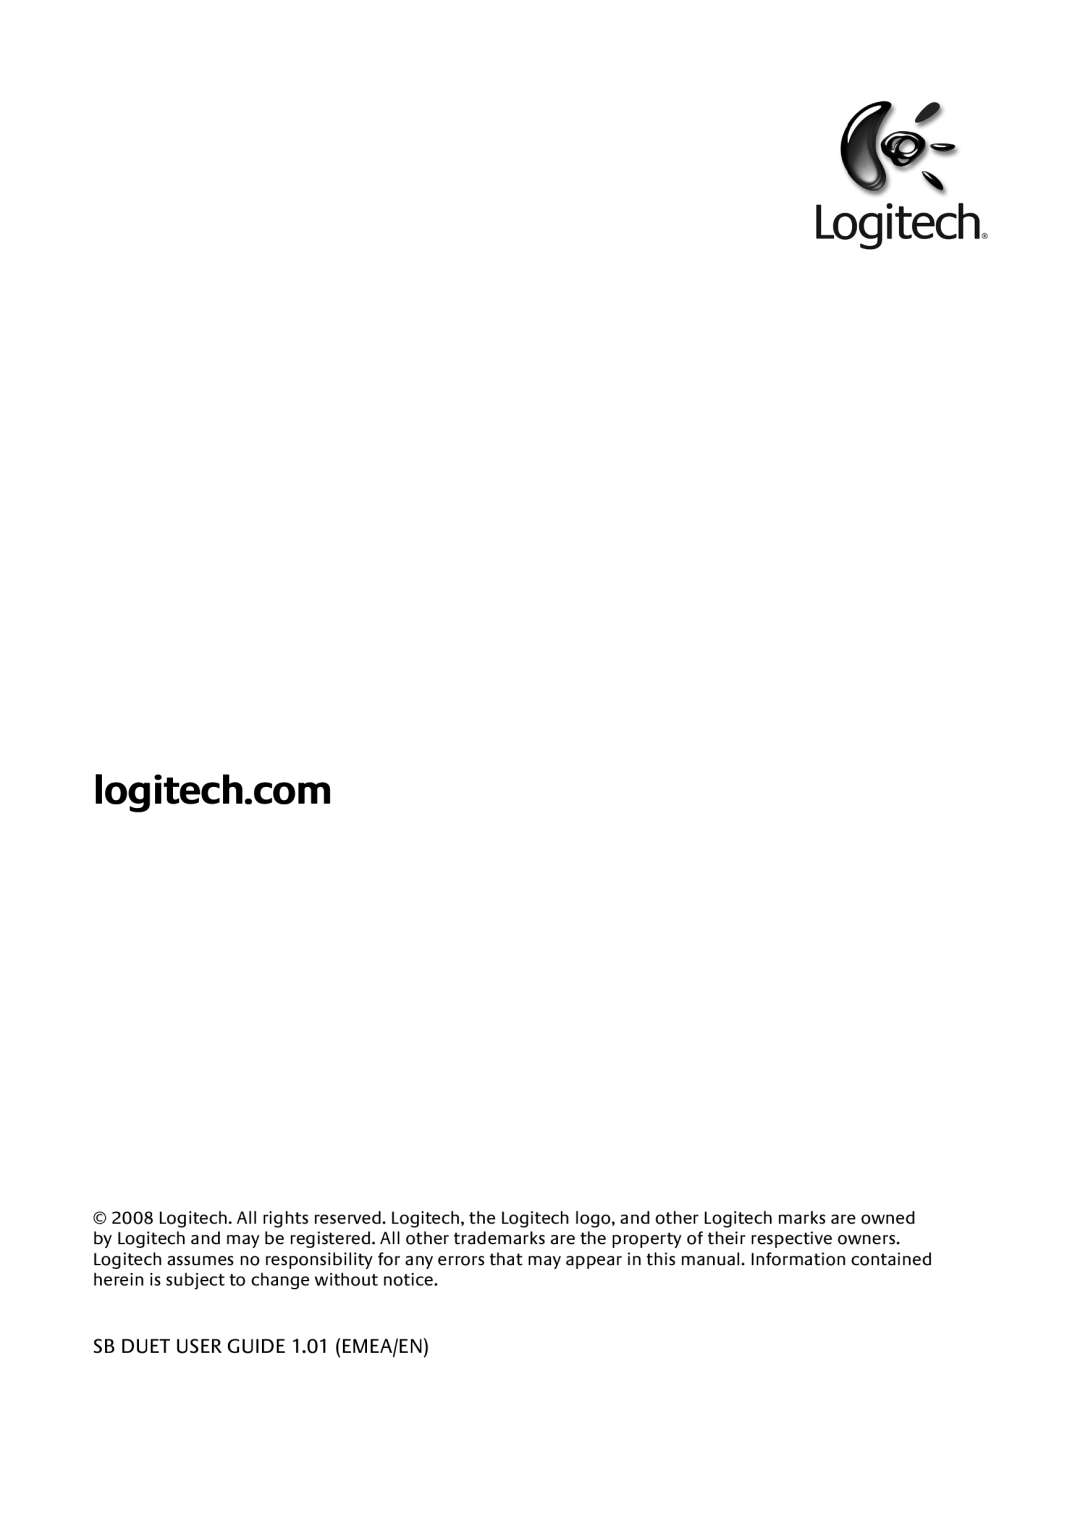 Logitech Duet manual SB DUET USER GUIDE 1.01 EMEA/EN 